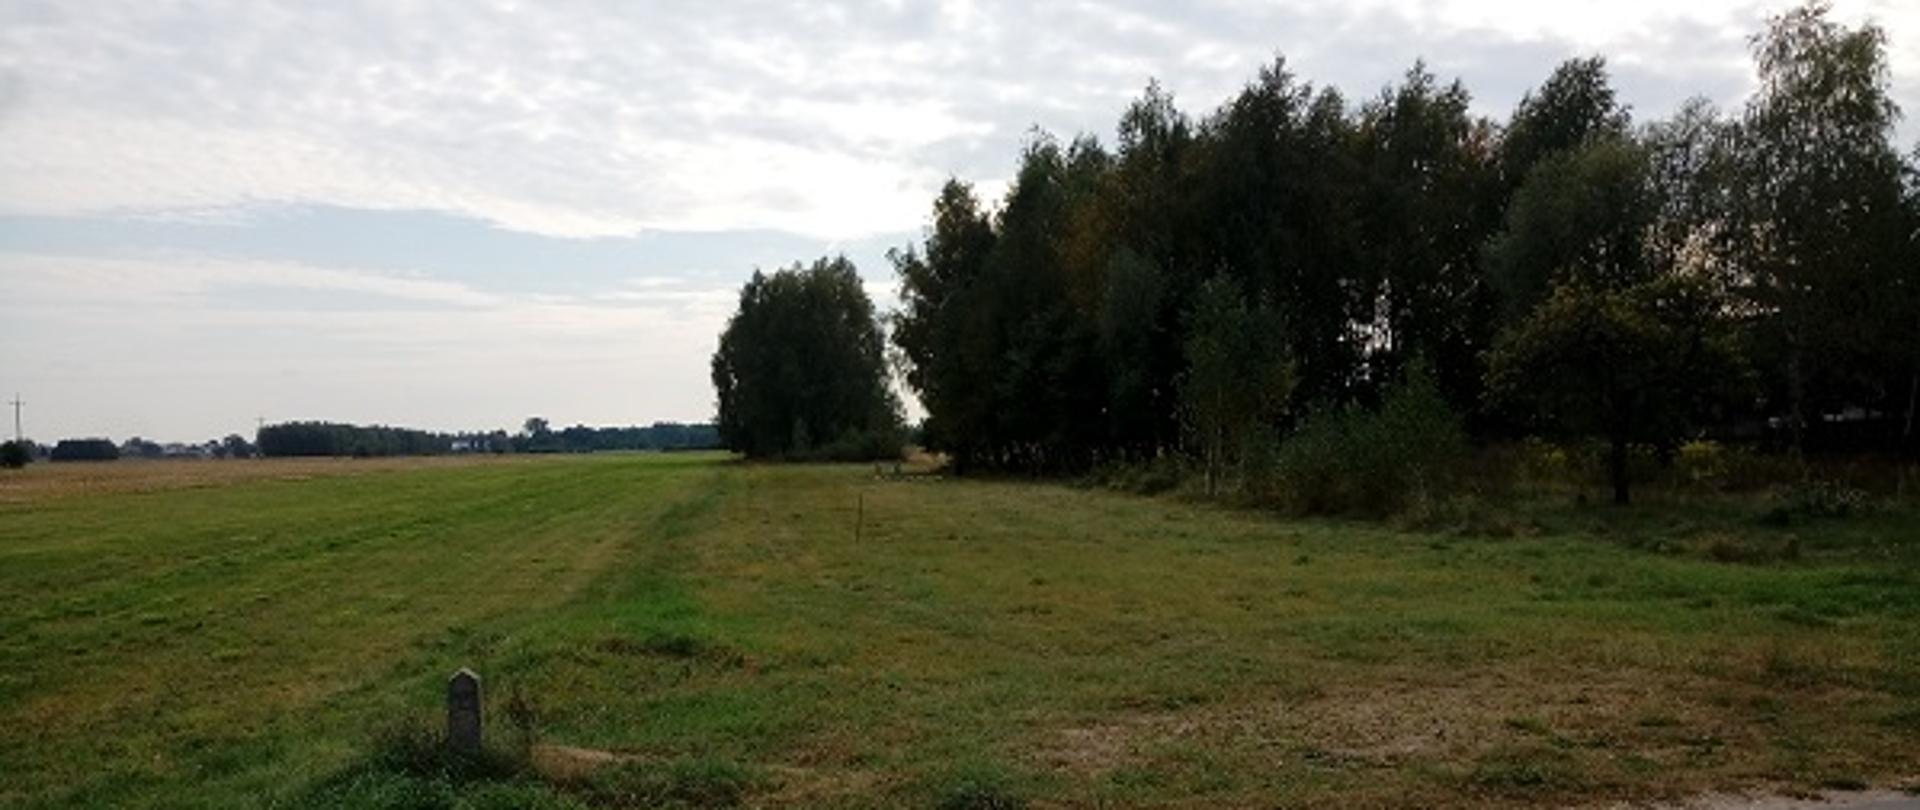 Na zdjęciu widać pustą działkę porośniętą trawą, po prawej stronie mały kilkuletni lasek.